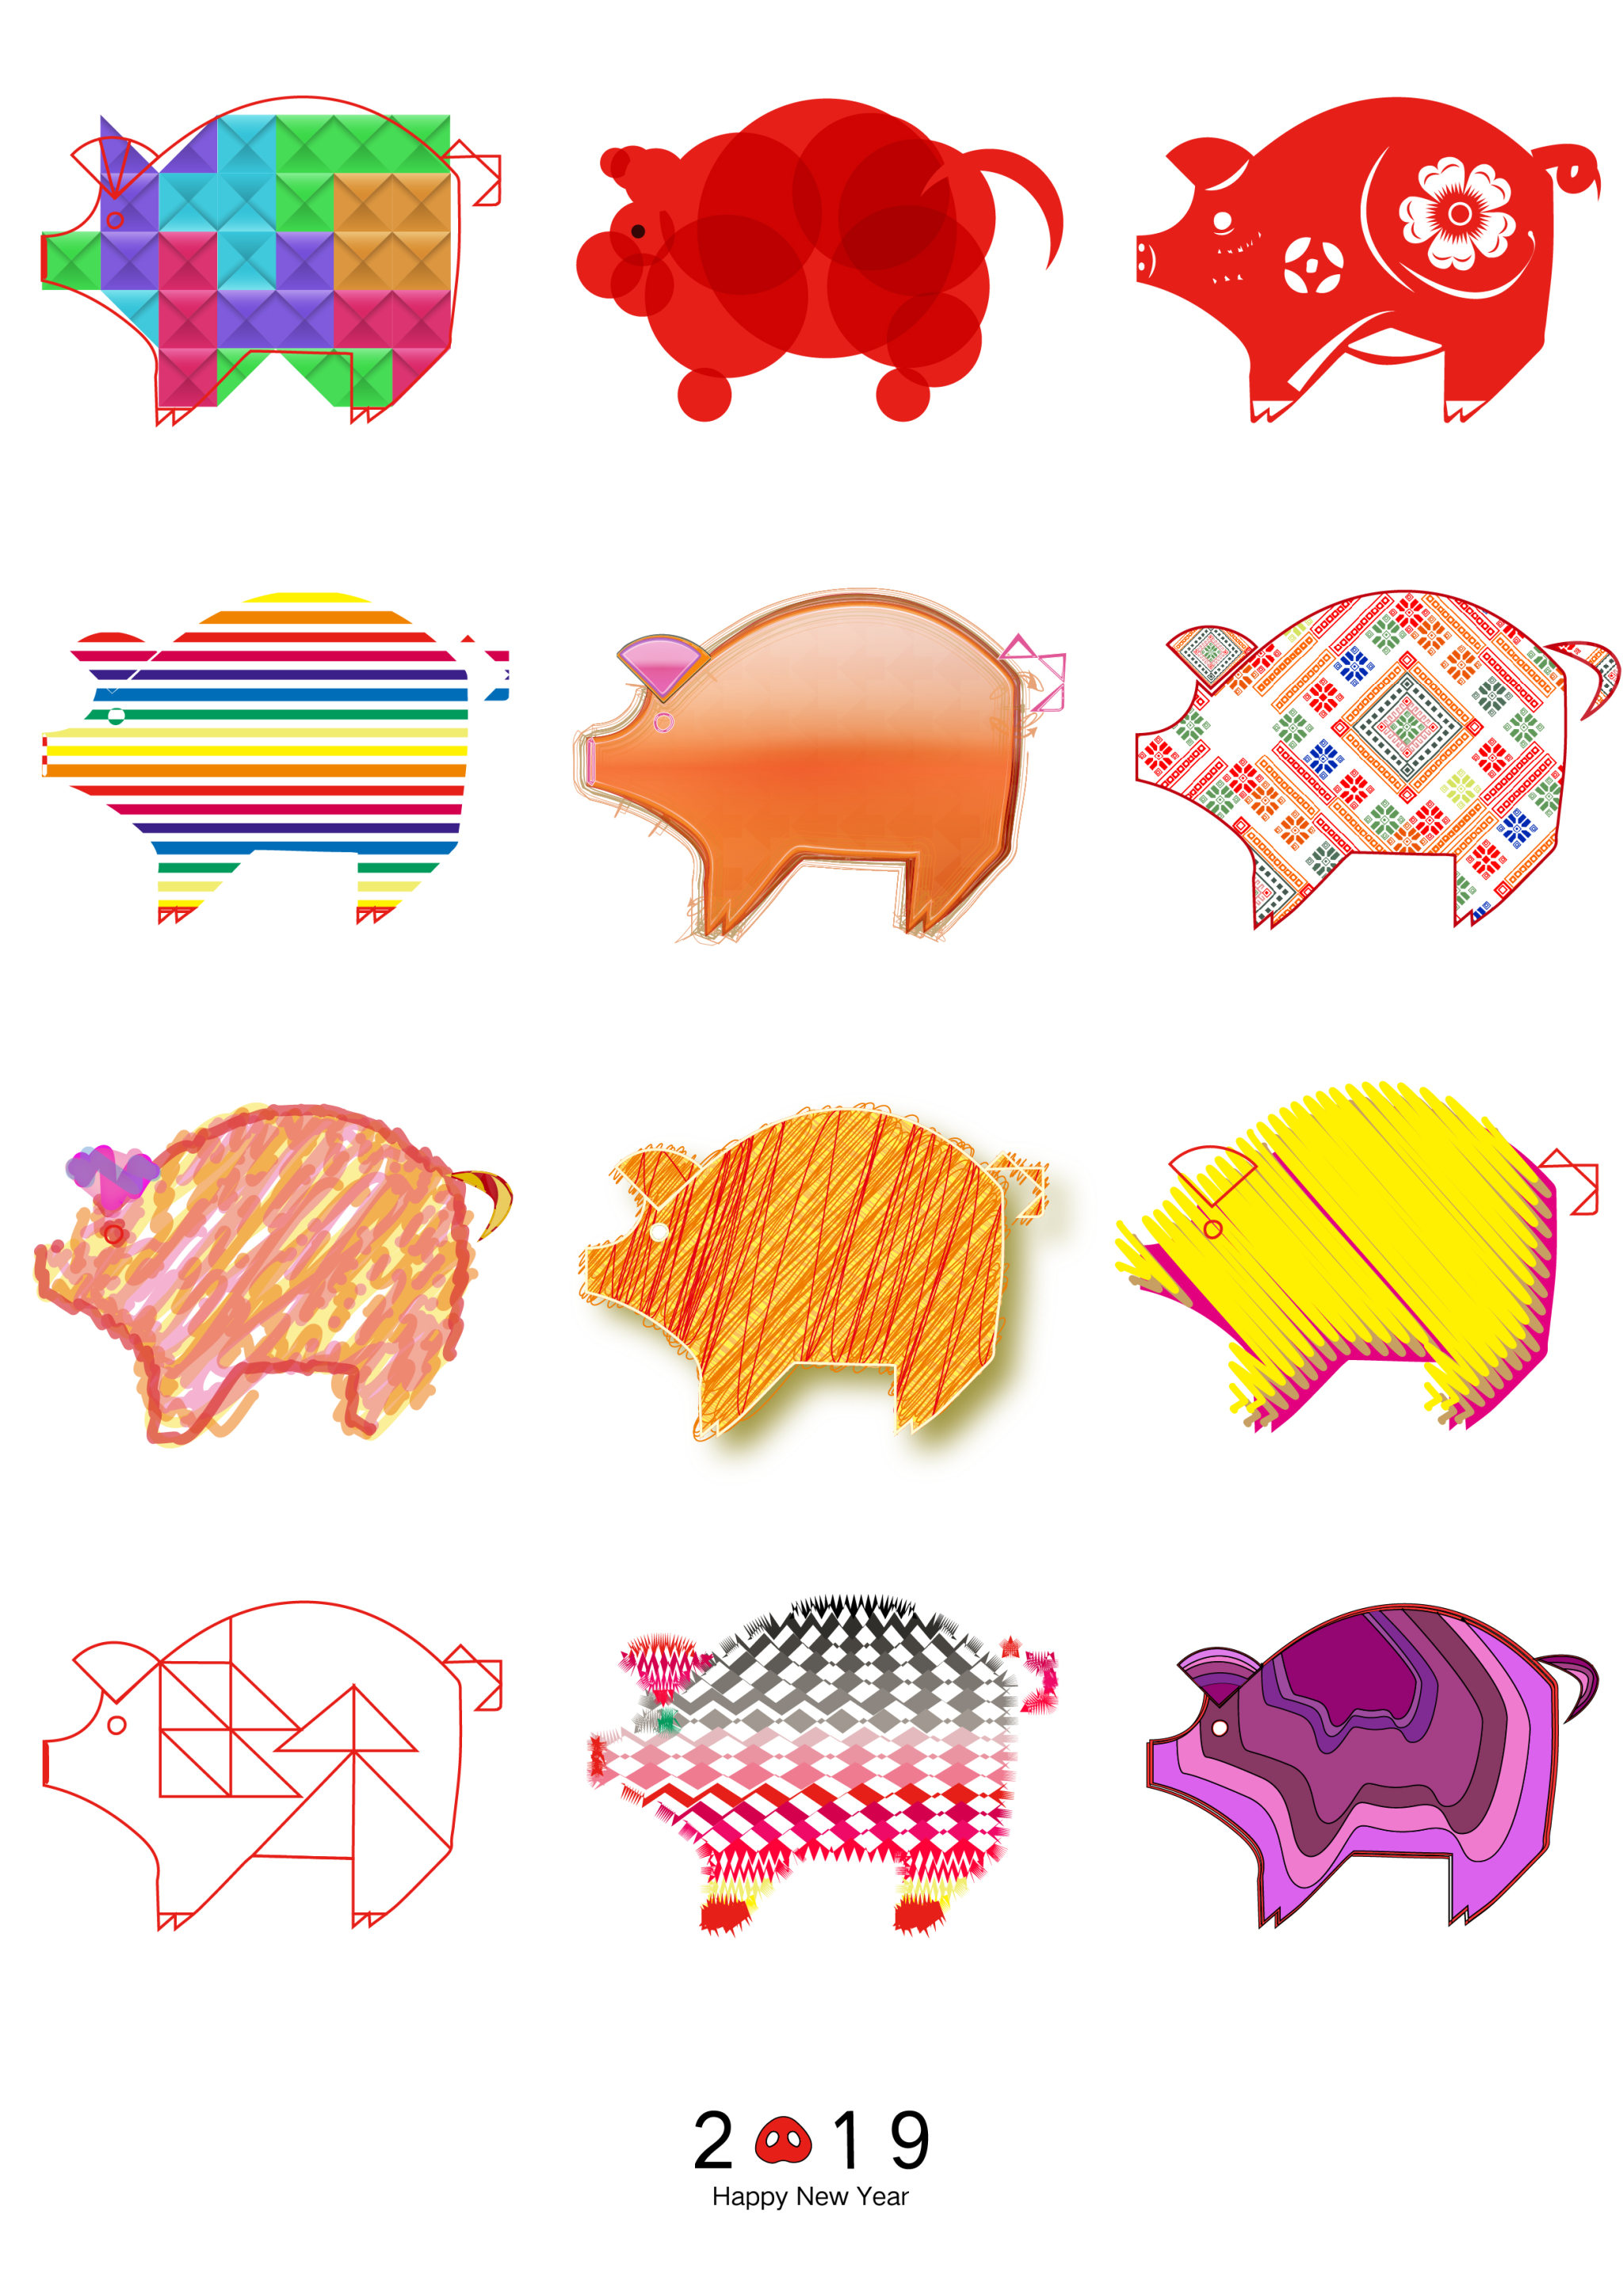 猪的联想创意图形图片